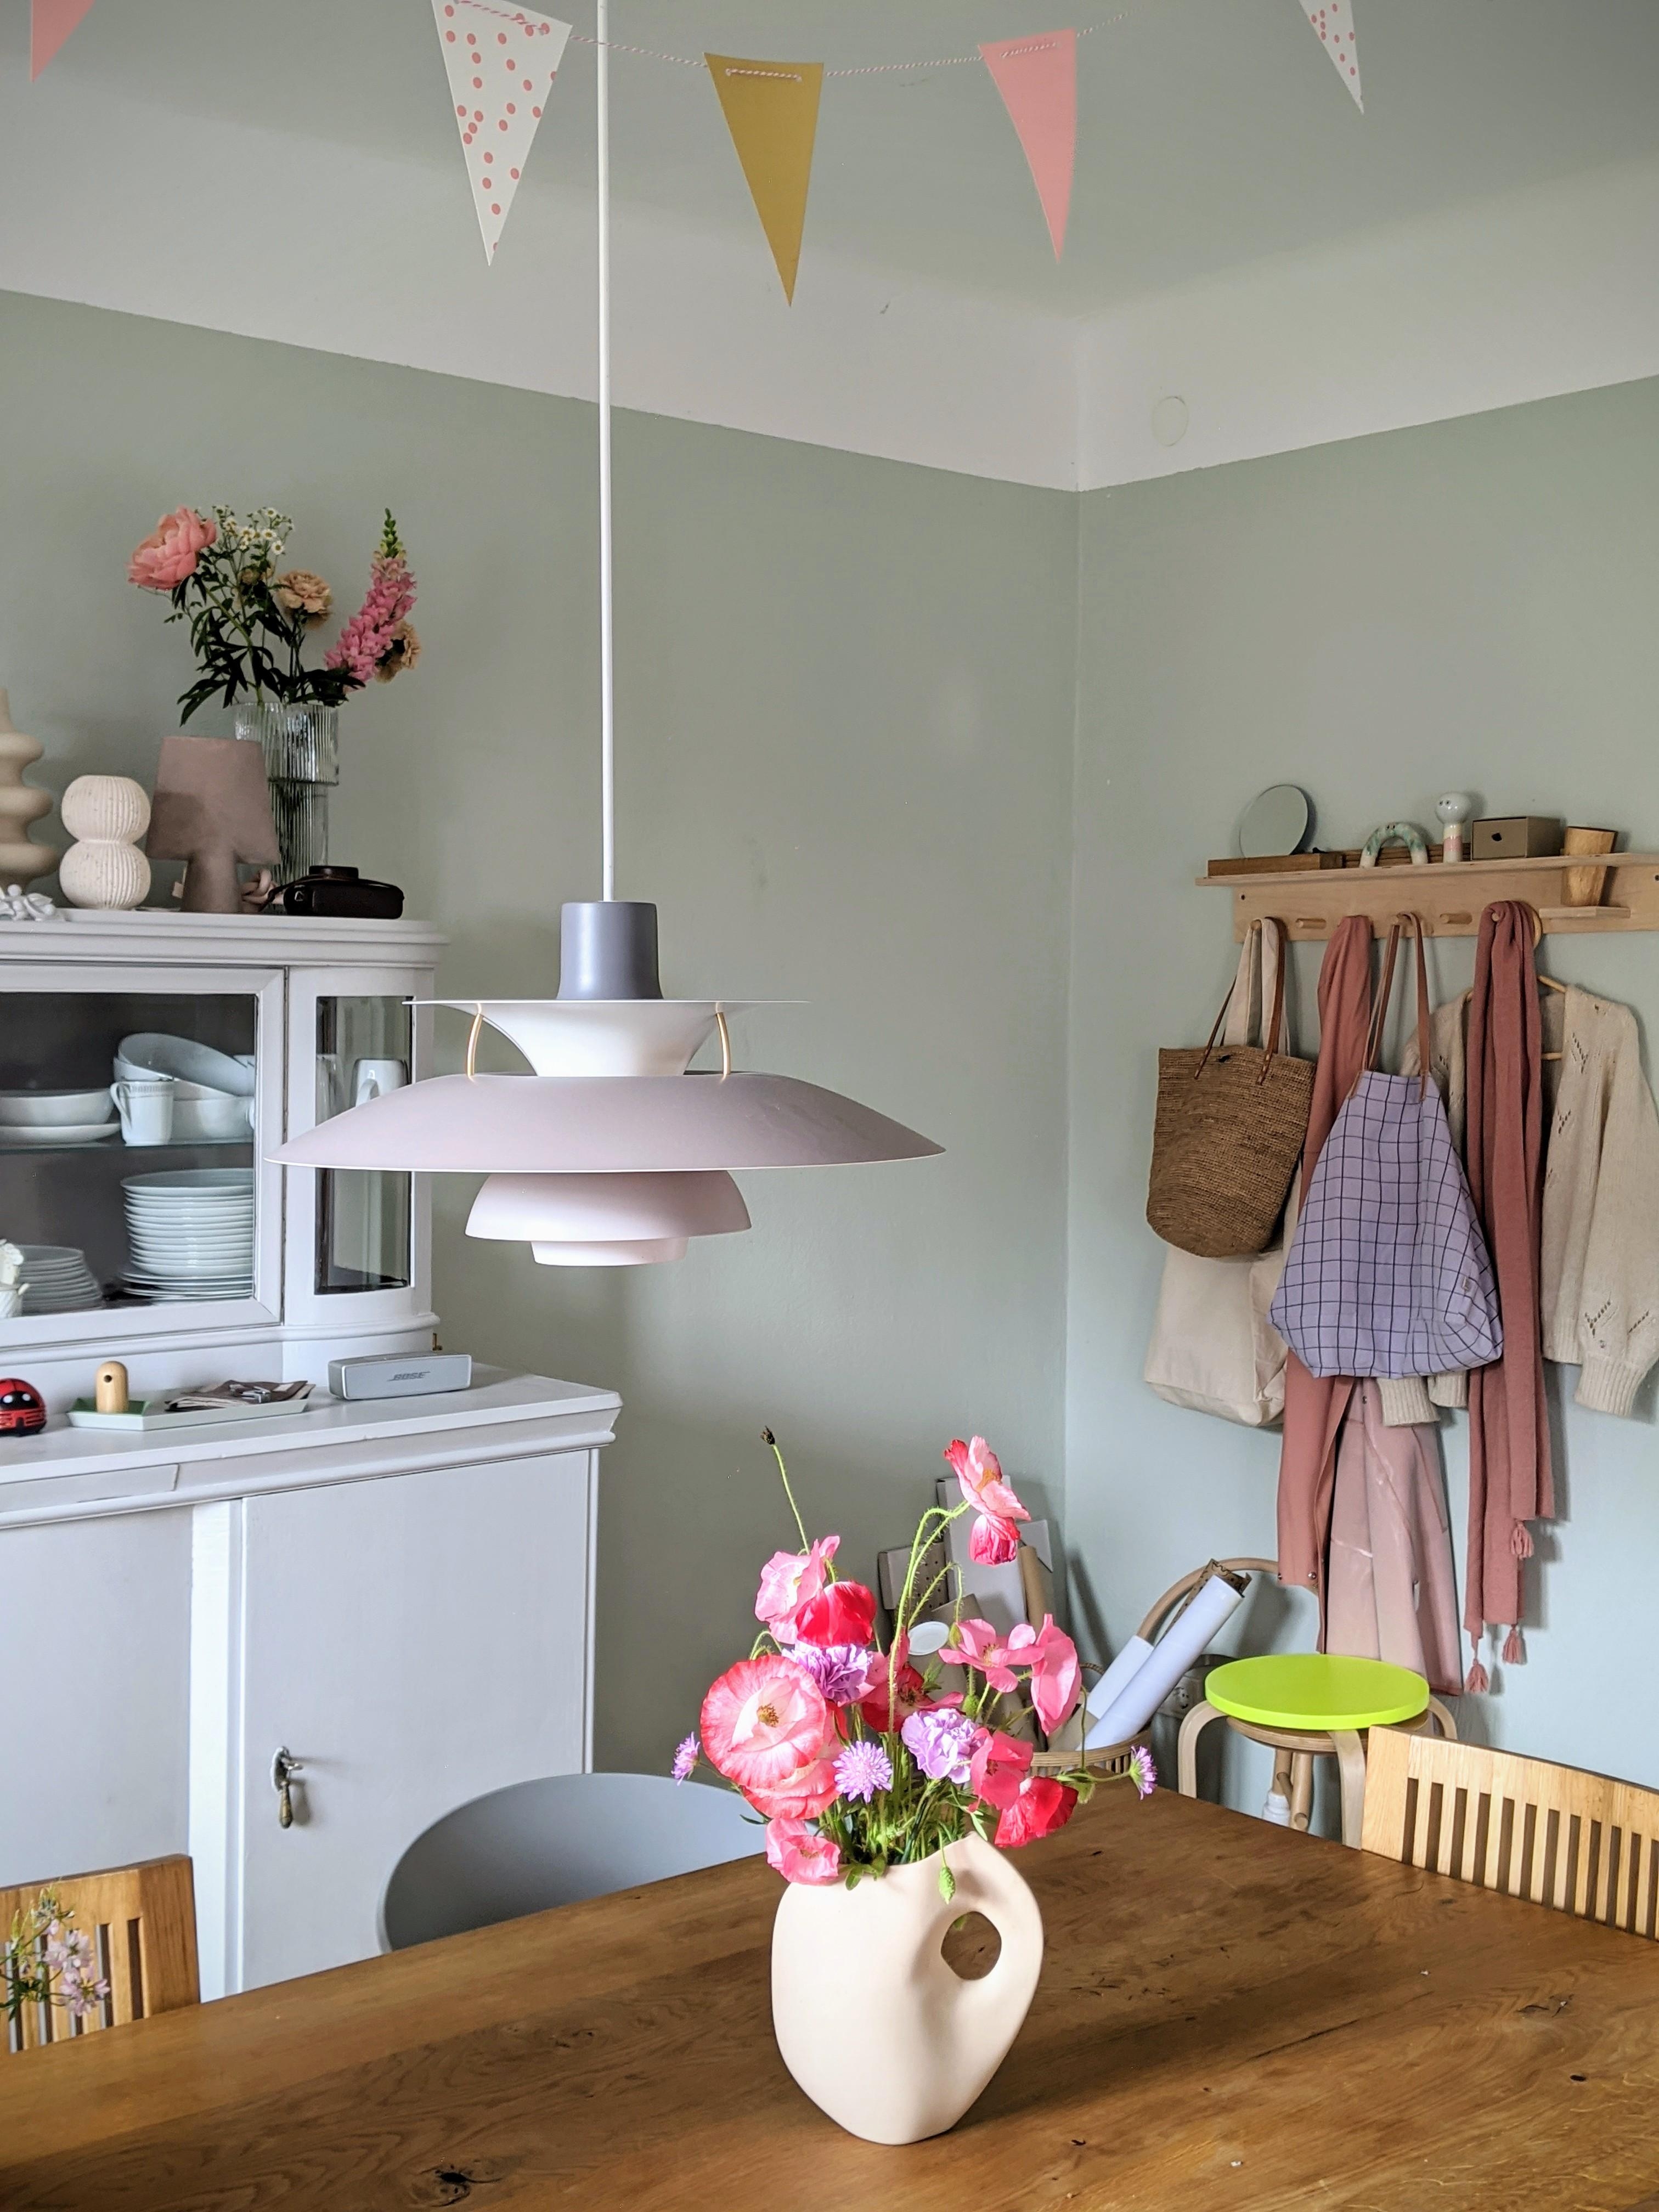 Mohnblumen liebe...
#esszimmer #dinningroom #scandinavisch #interiordesign #interior #decoration #living #homestory